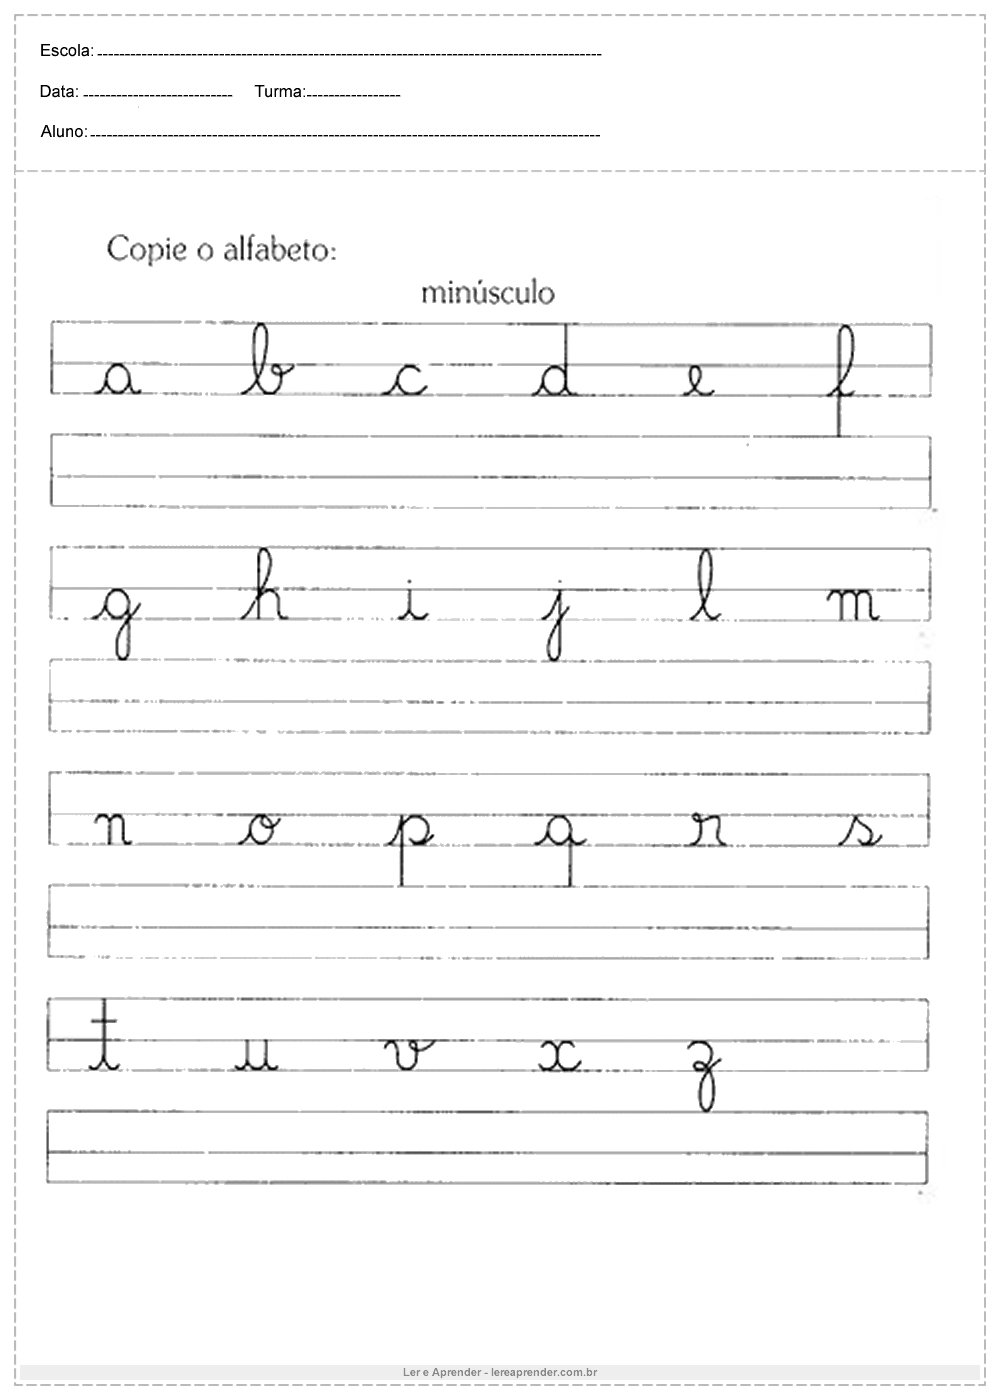 Atividades de caligrafia copie o alfabeto